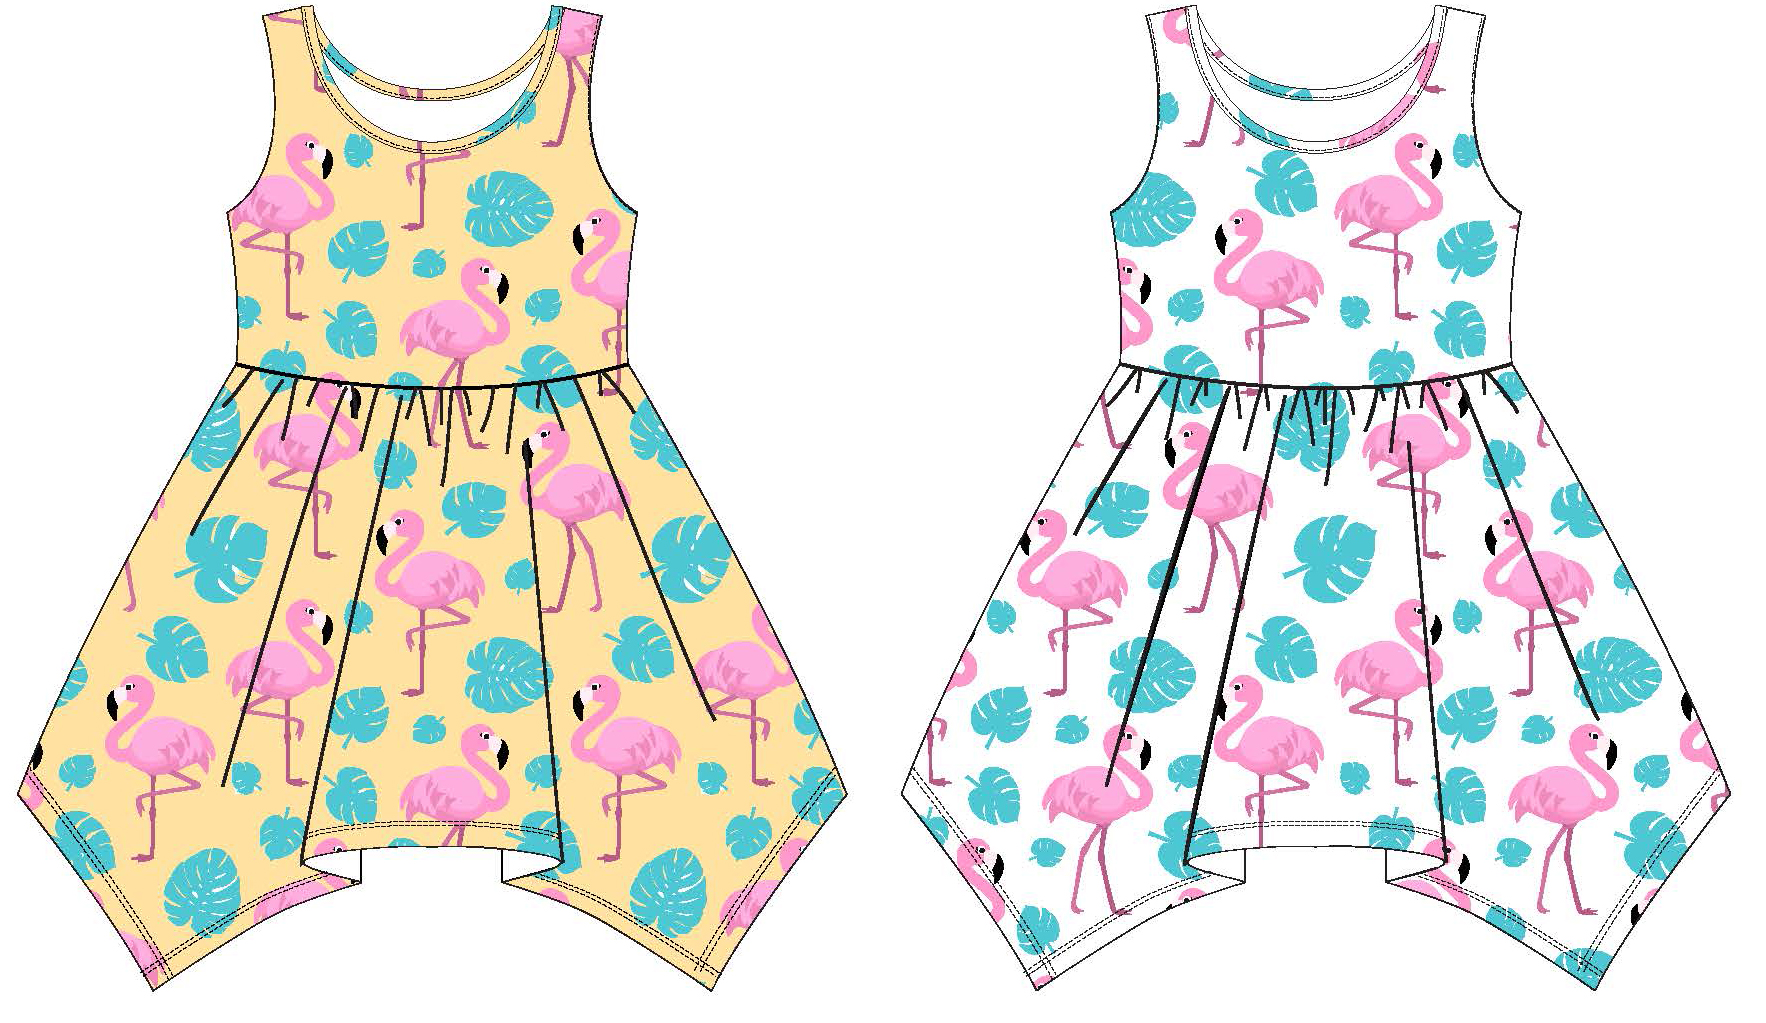 Baby Girl's Sleeveless Knit Shirtwaist DRESS w/ Flamingo Stripes - Size 12M-24M